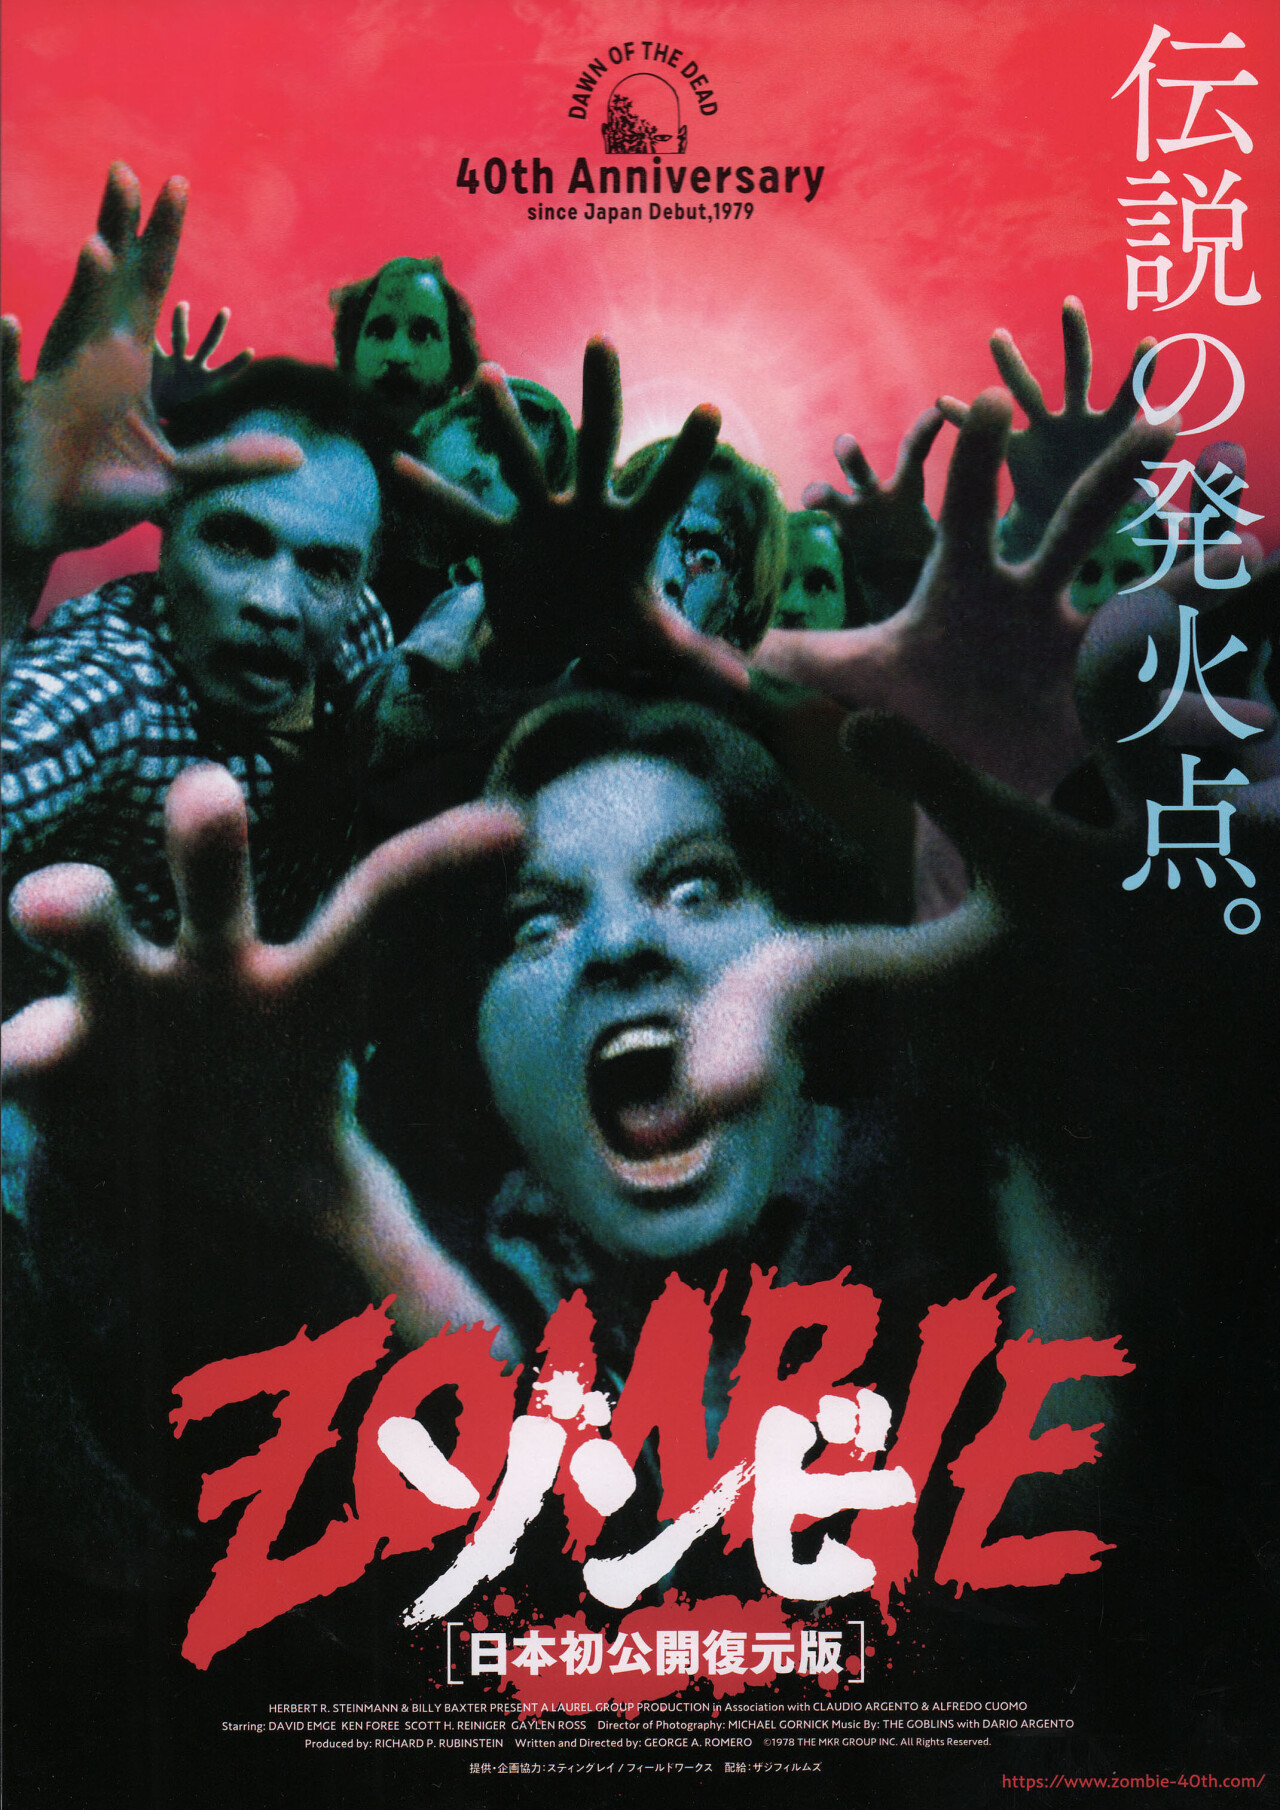 Рассвет мертвецов (Dawn of the Dead, 1978), режиссёр Джордж А. Ромеро, японский постер к фильму (ужасы, 2019 год)